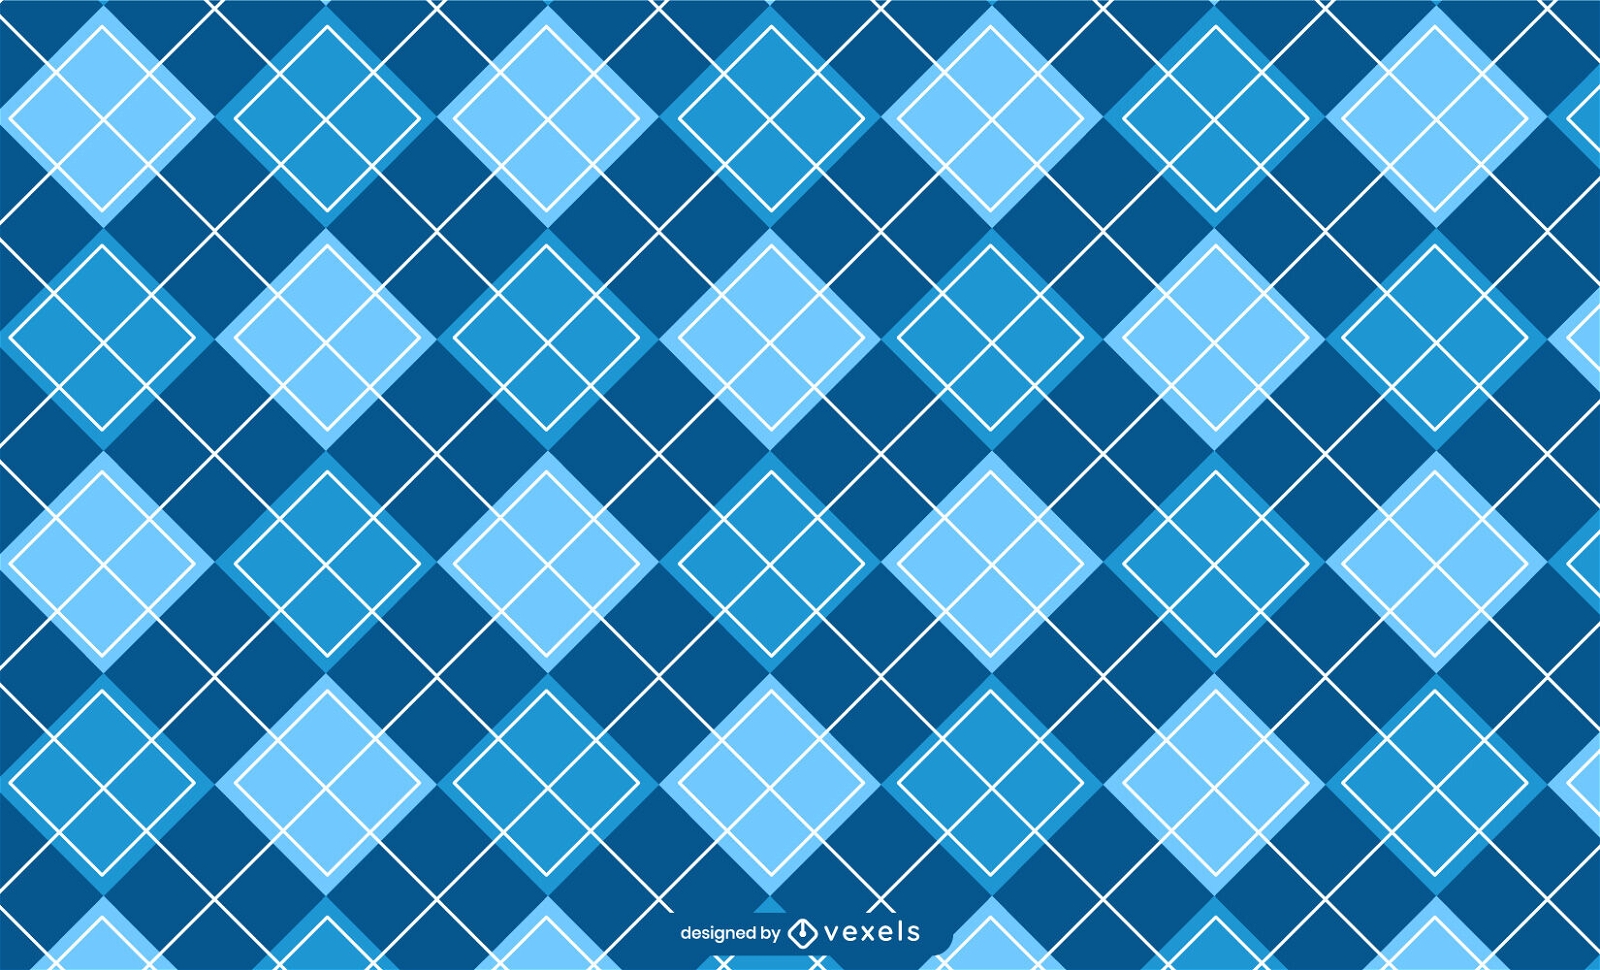 Checkered pattern design